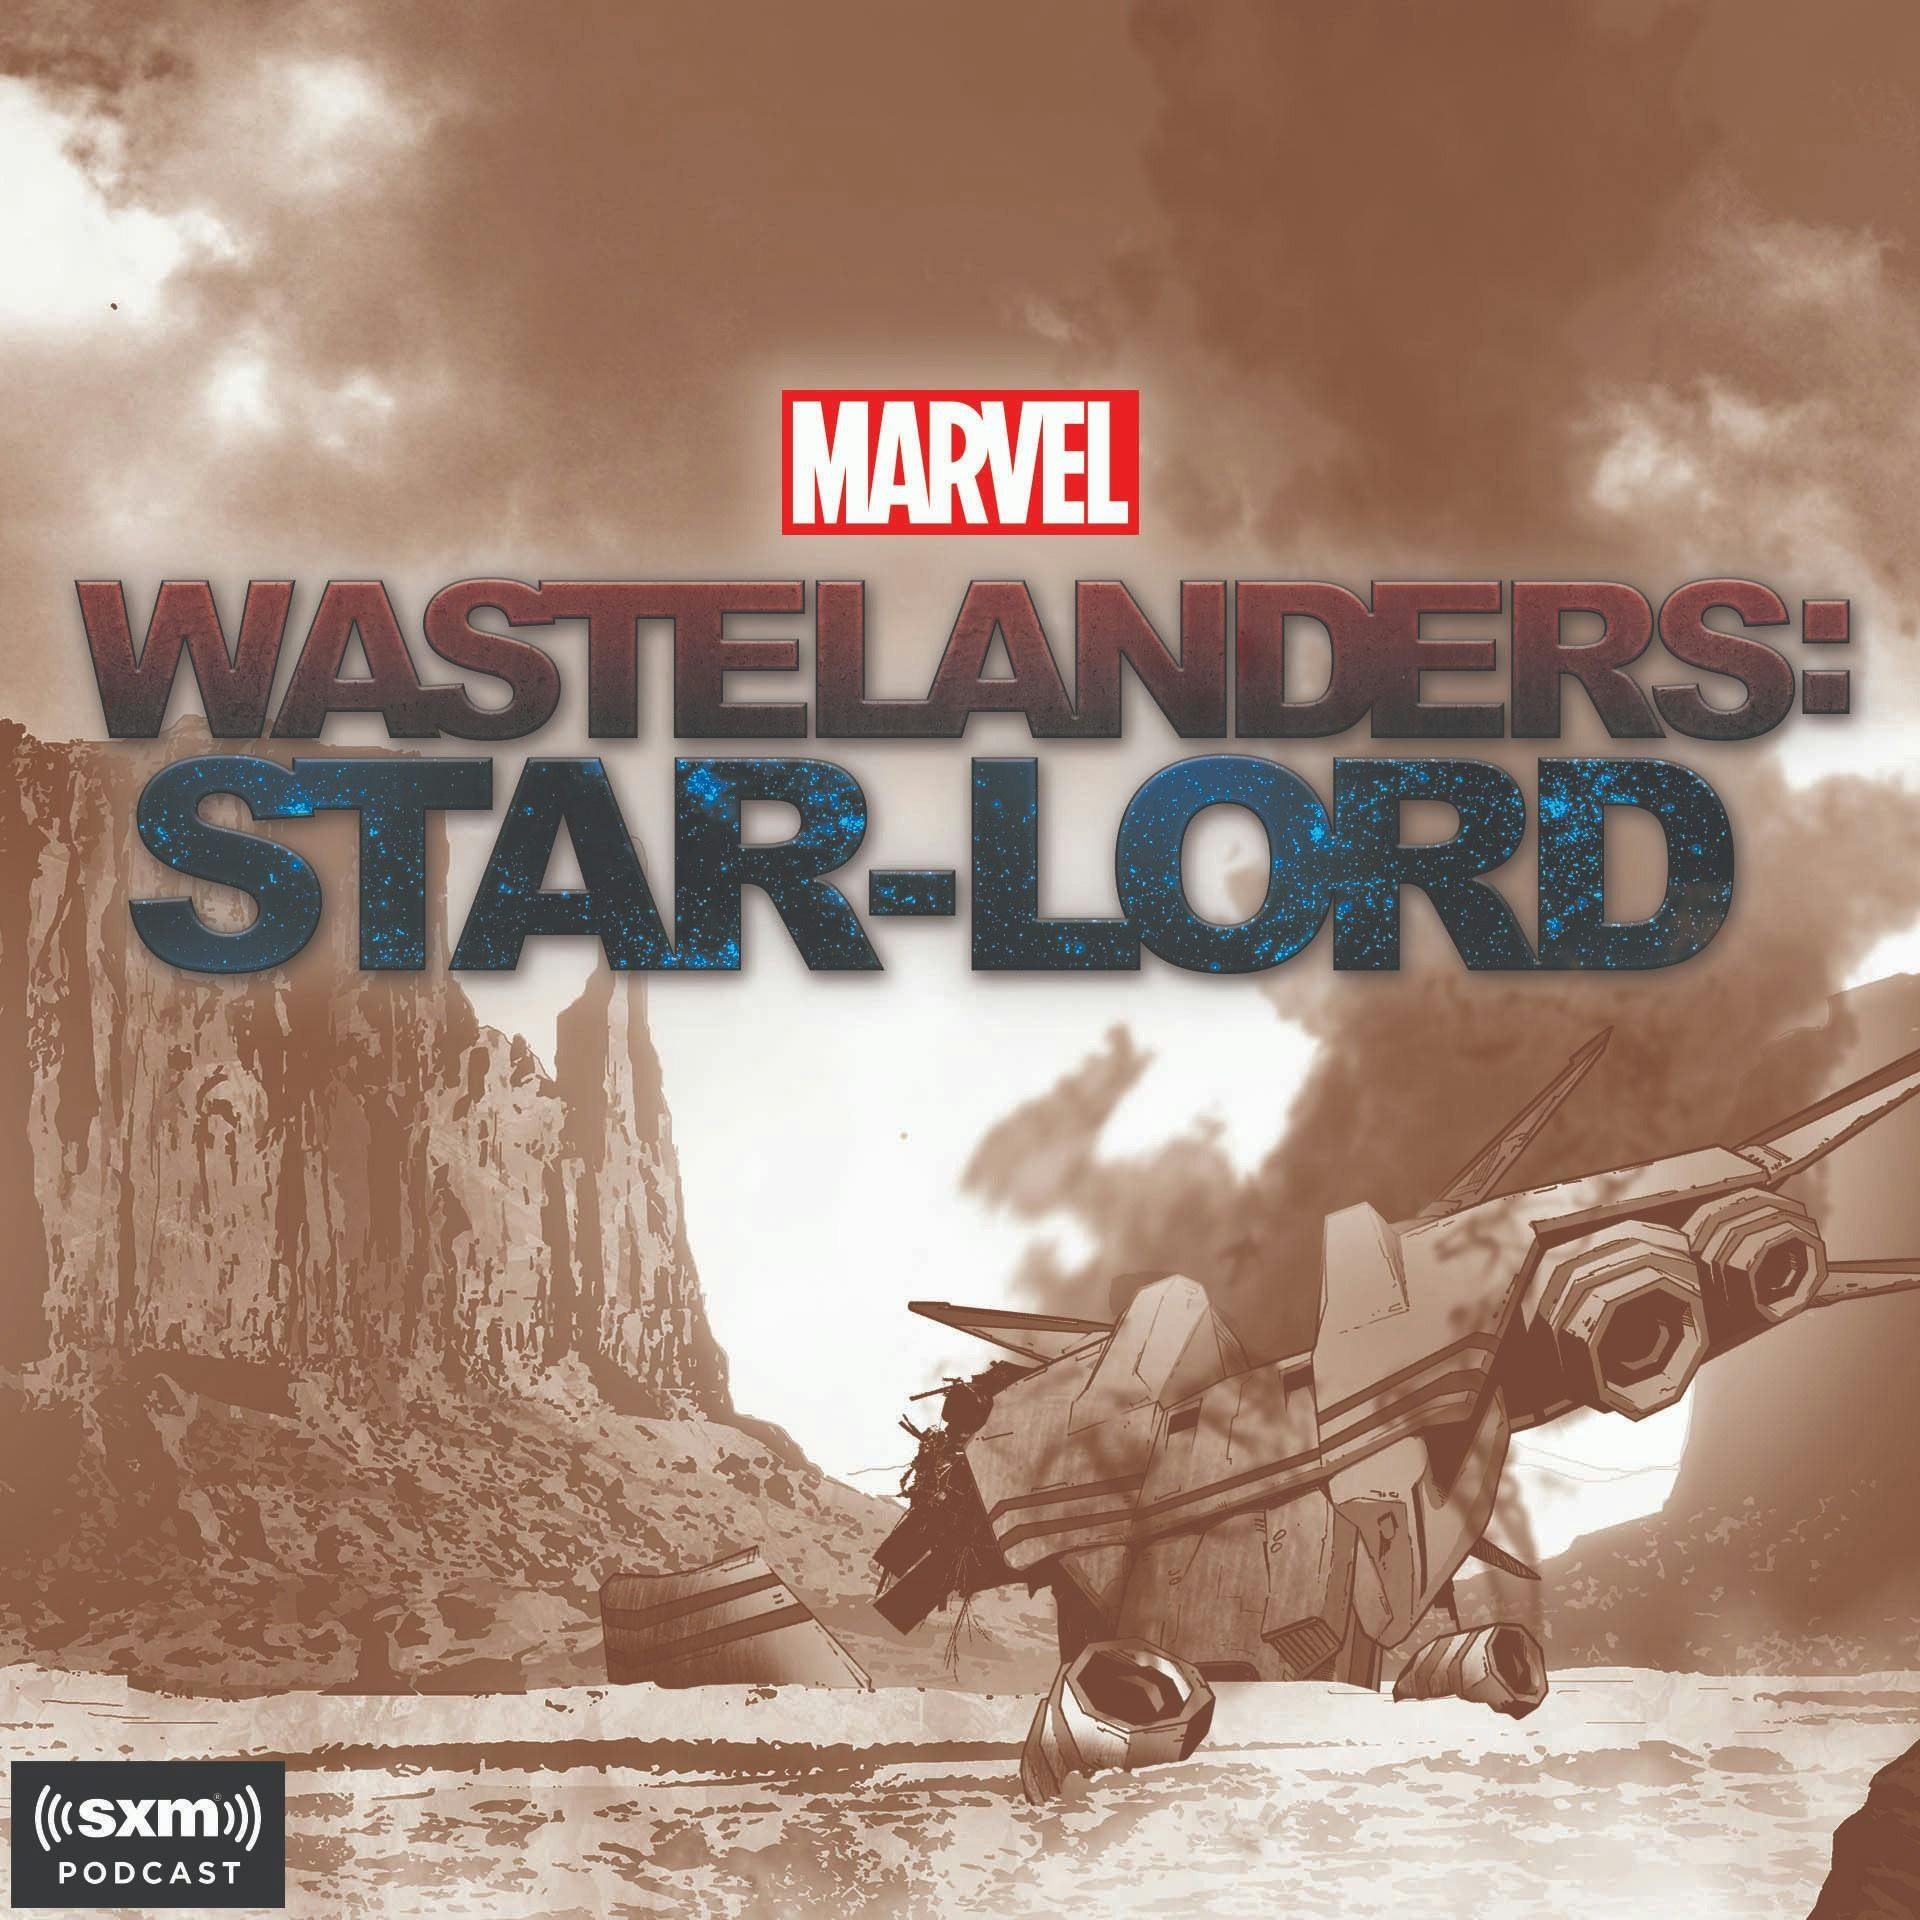 Marvel's Wastelanders: Old Man Star Lord